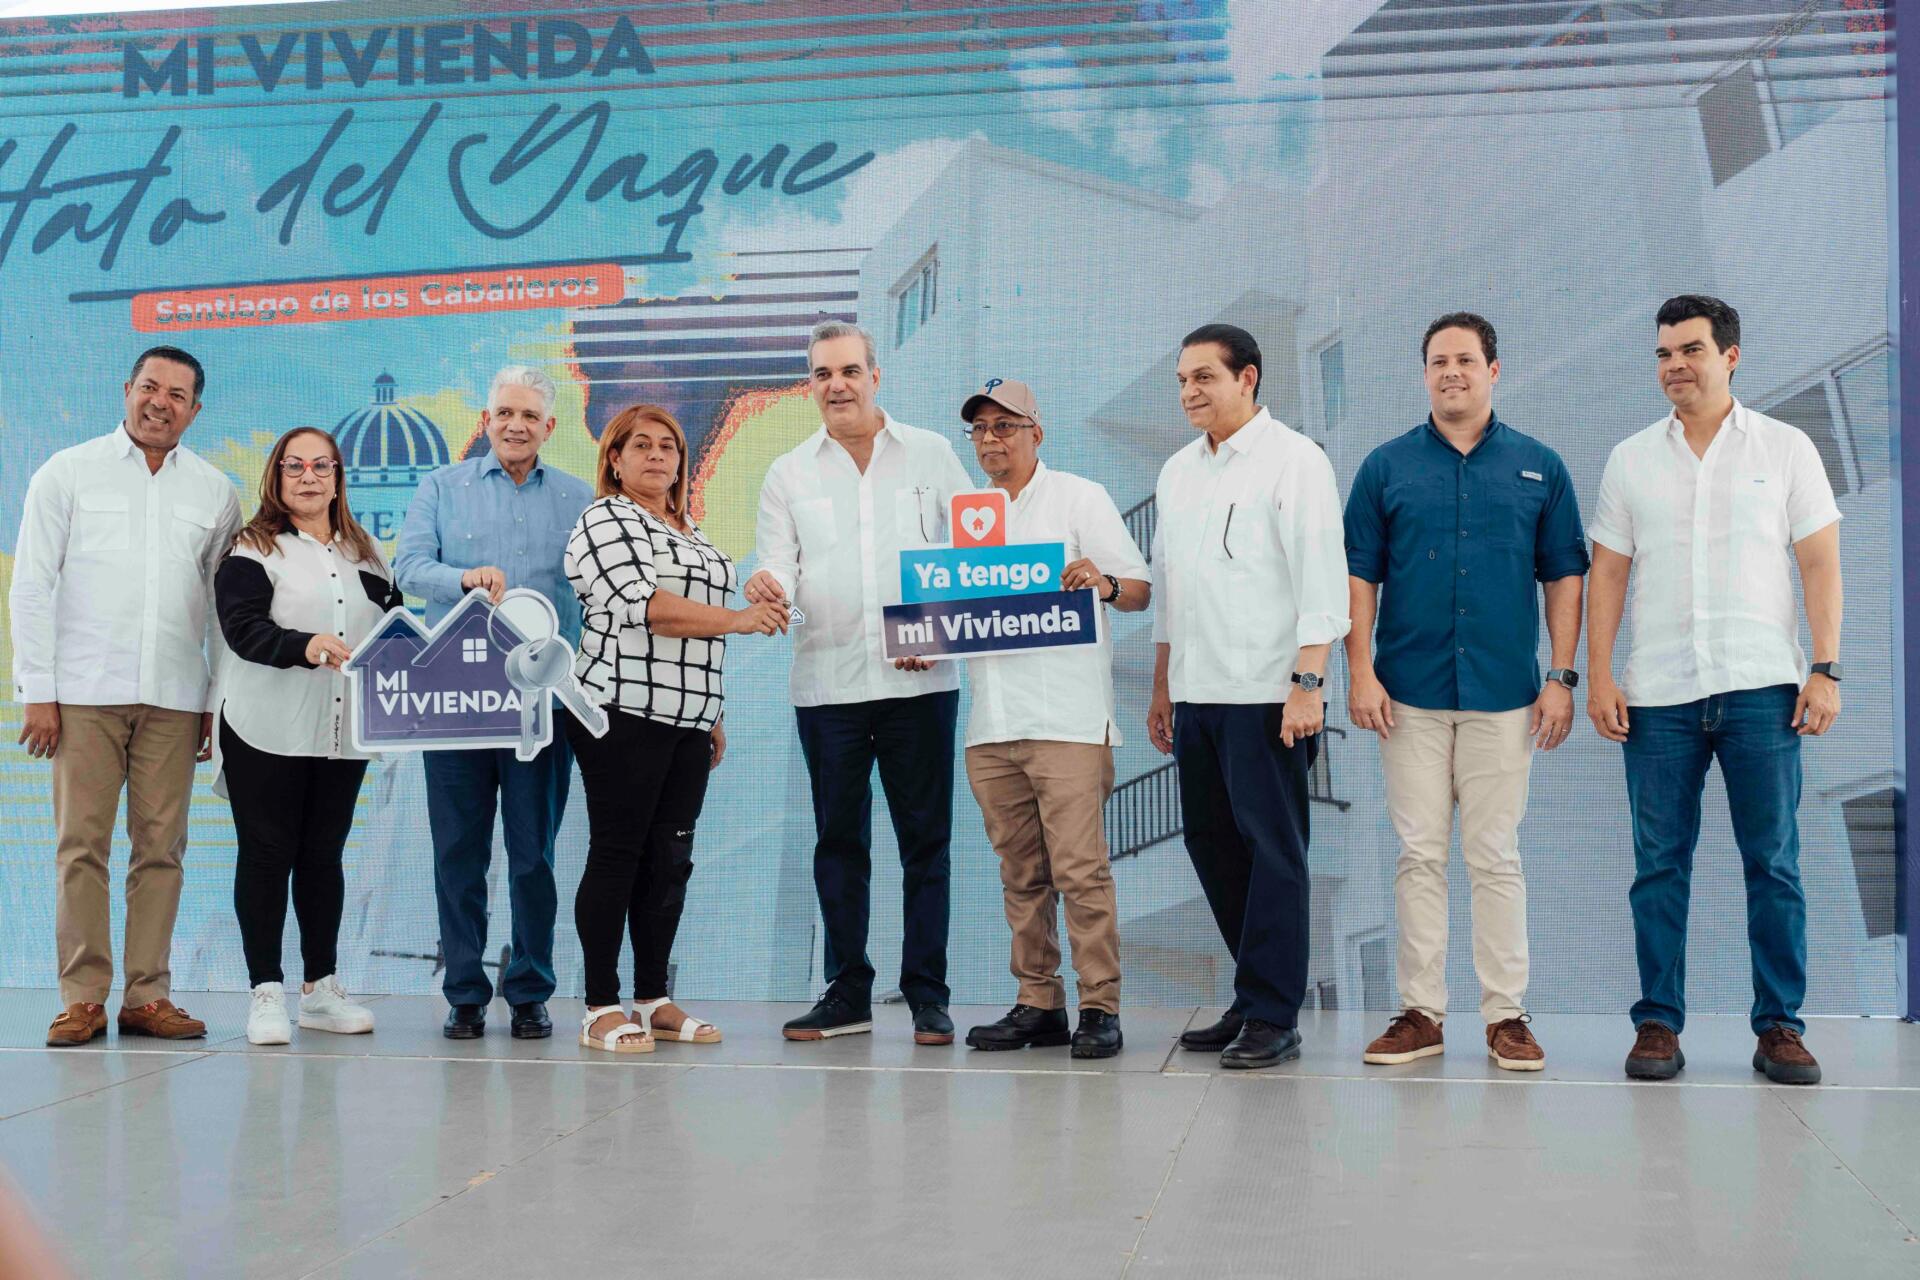 Presidente Abinader junto a beneficiarios del Plan Mi Vivienda Hato del Yaque, en la provincia Santiago